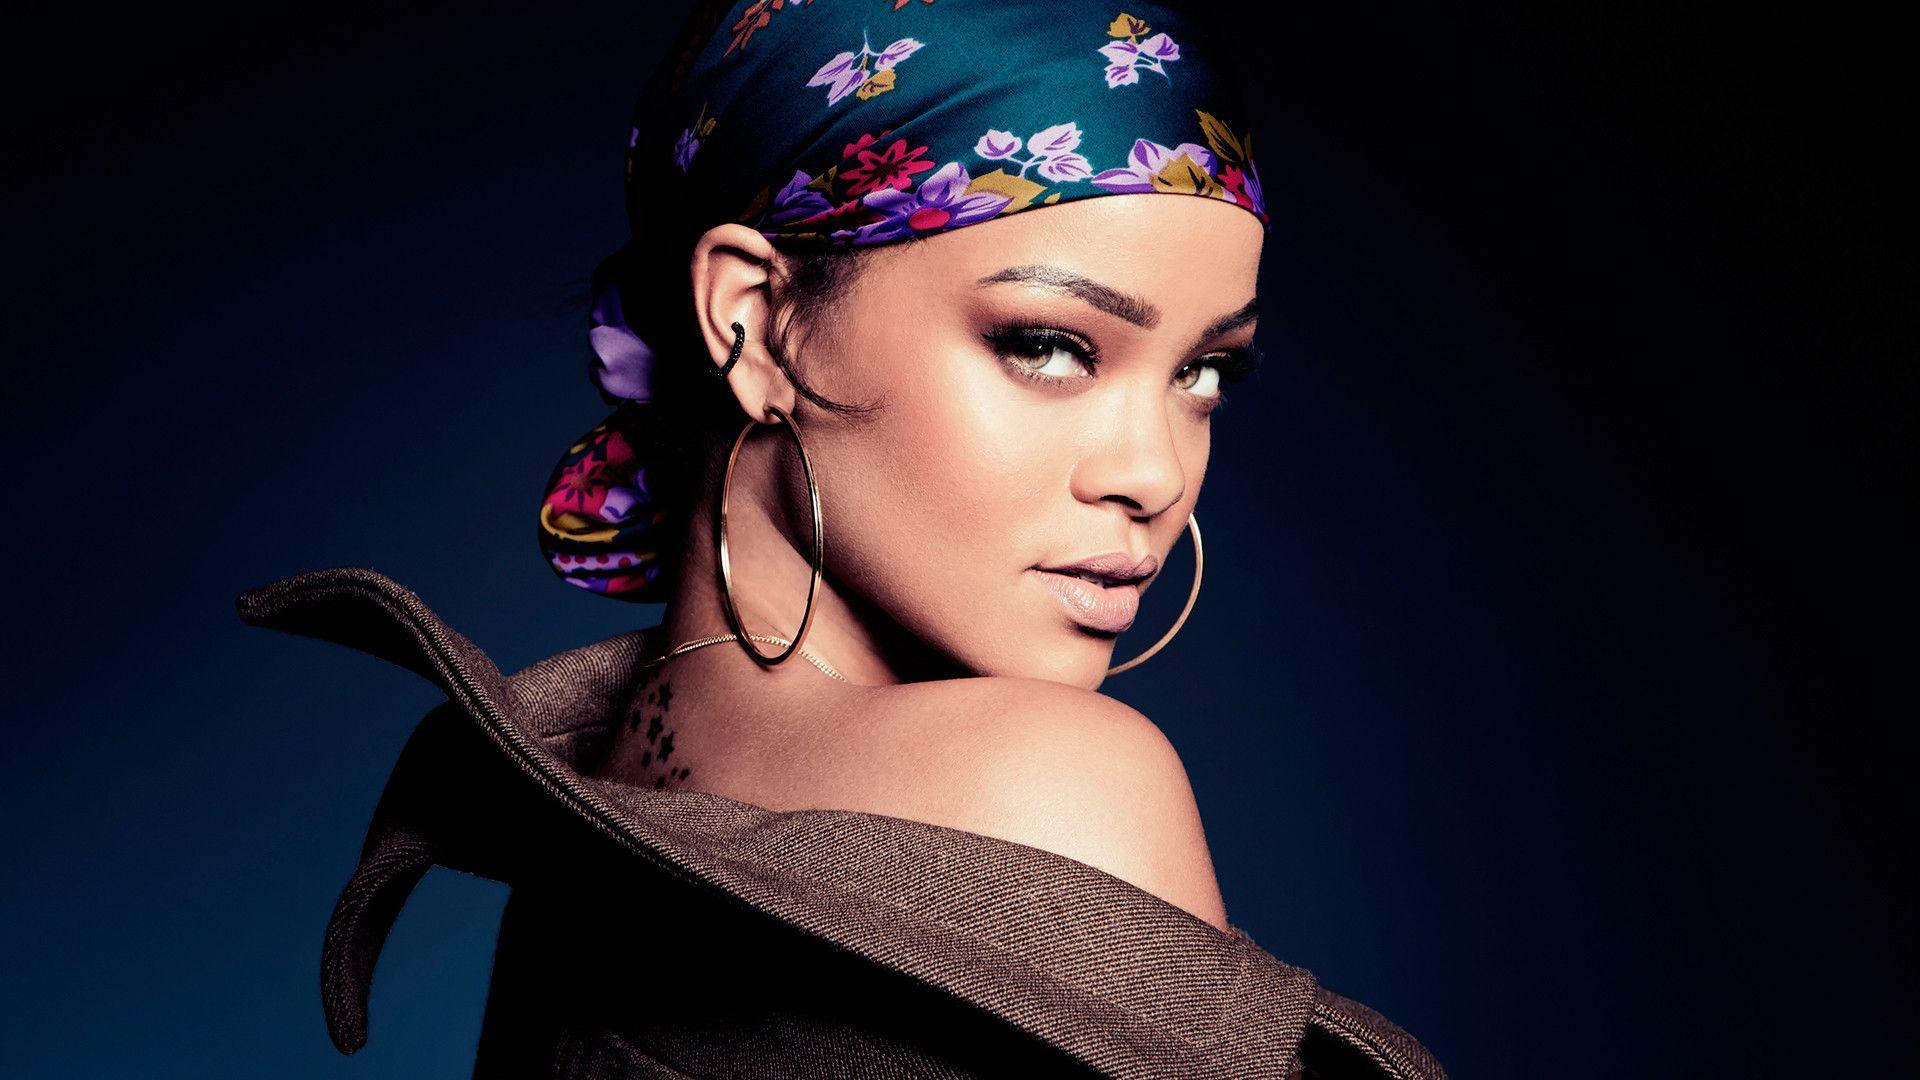 Rihanna 2018 Wallpaper